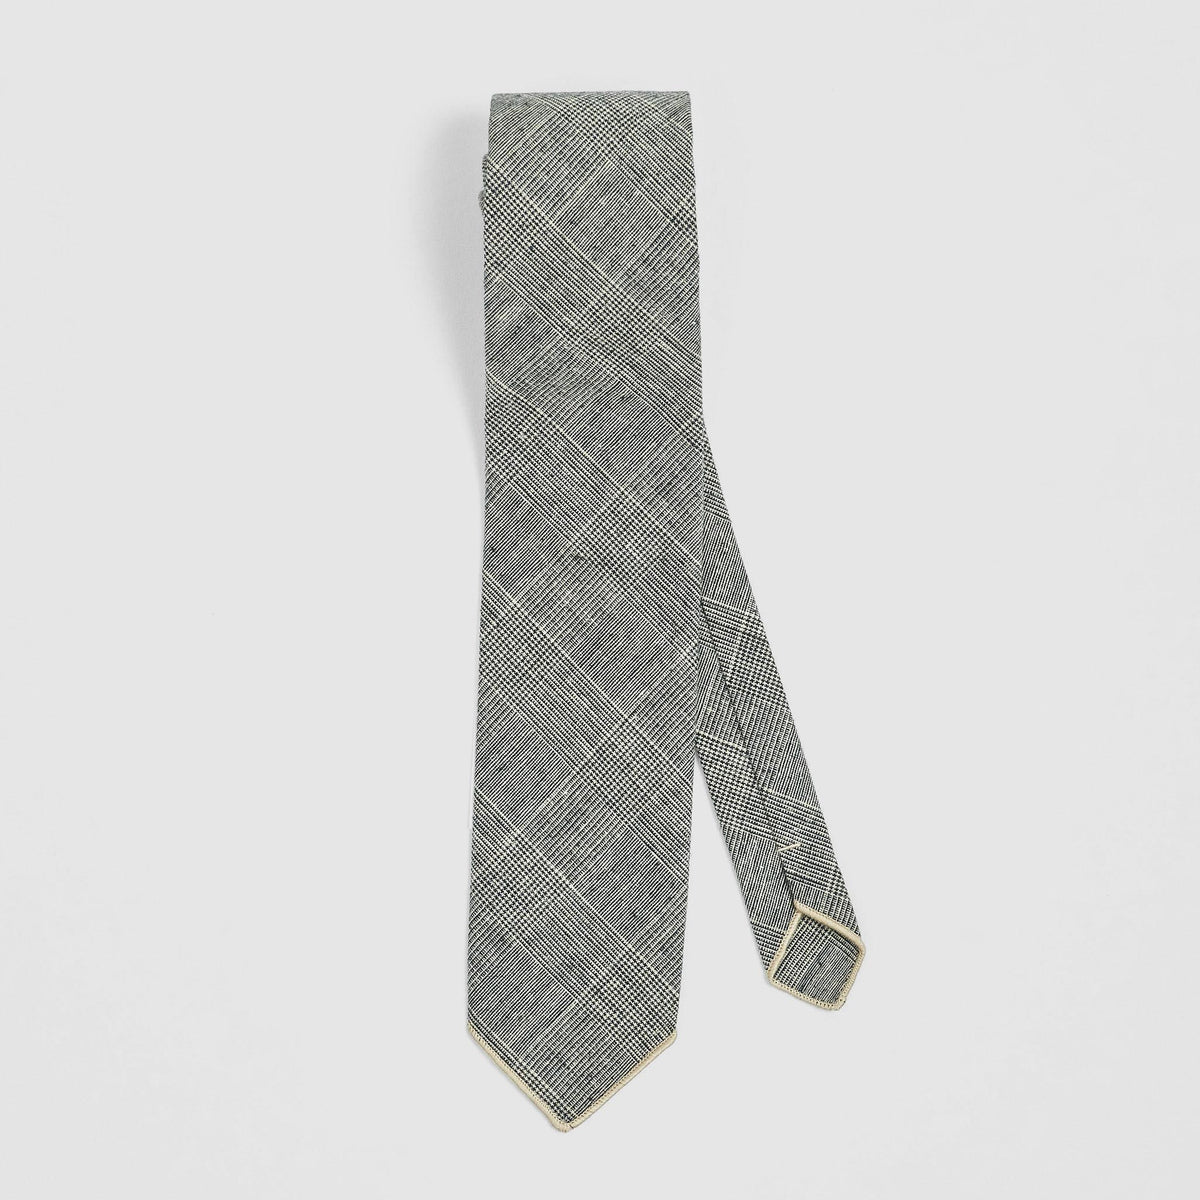 Engineered Garments Neck Tie Beige and Black Glen Plaid